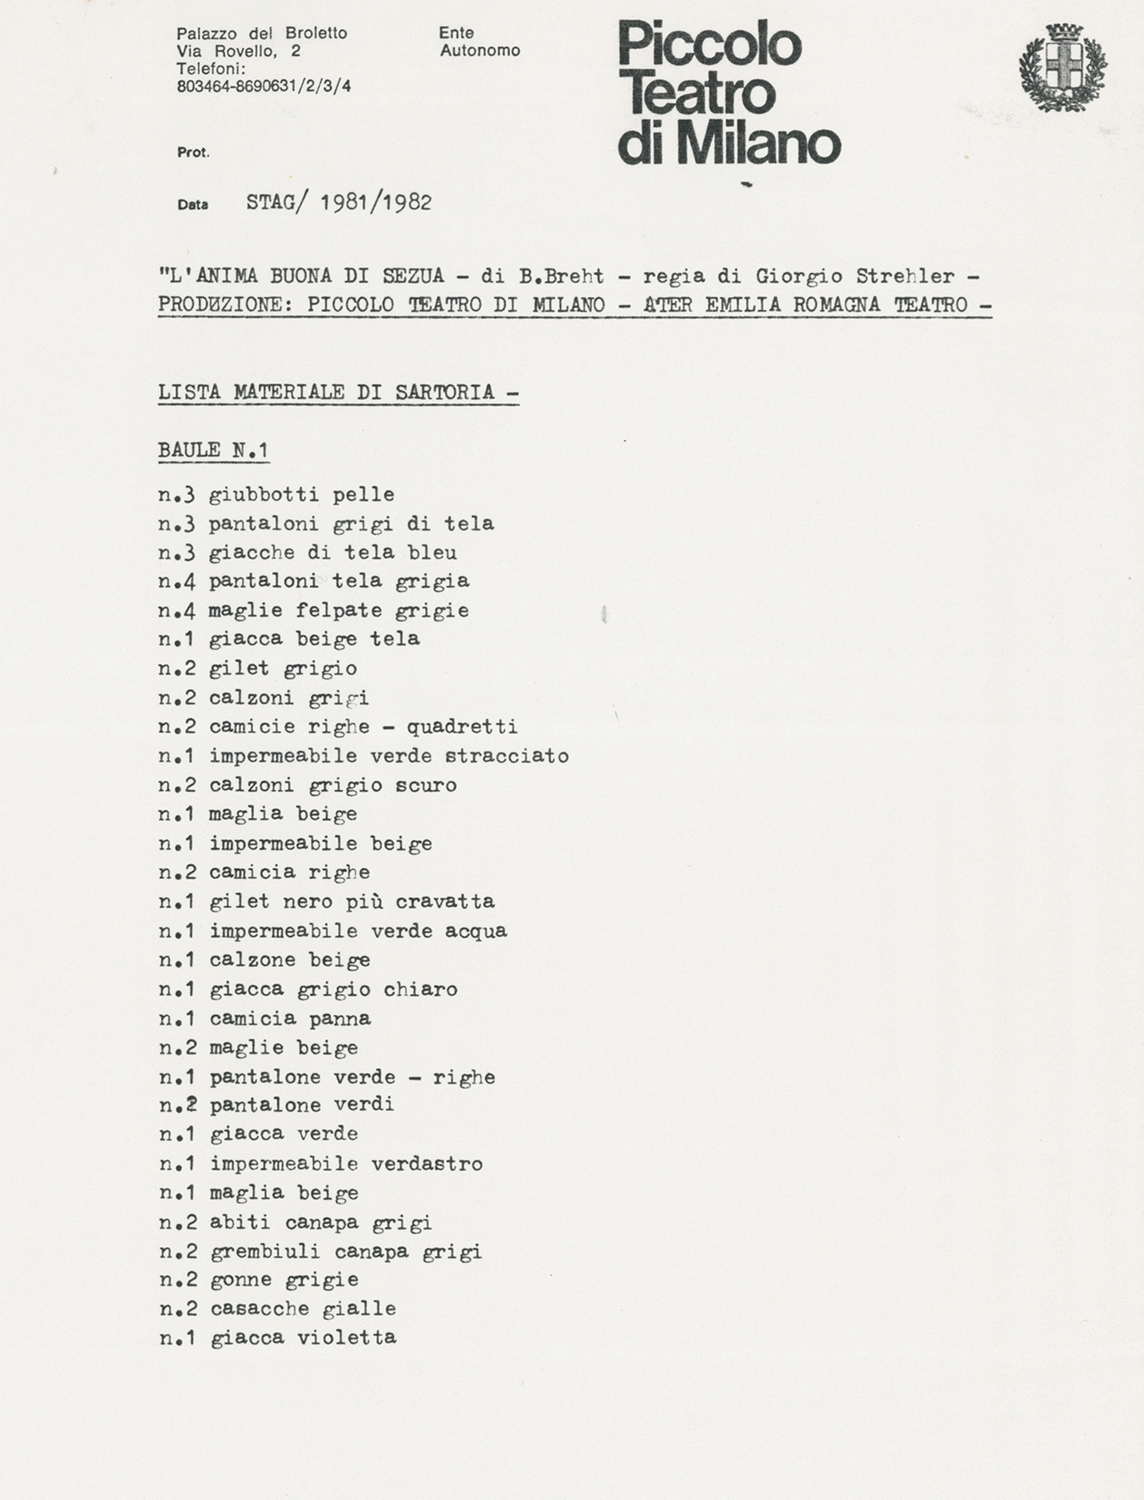 Una pagina dell’elenco dei costumi - Archivio Piccolo Teatro di Milano 